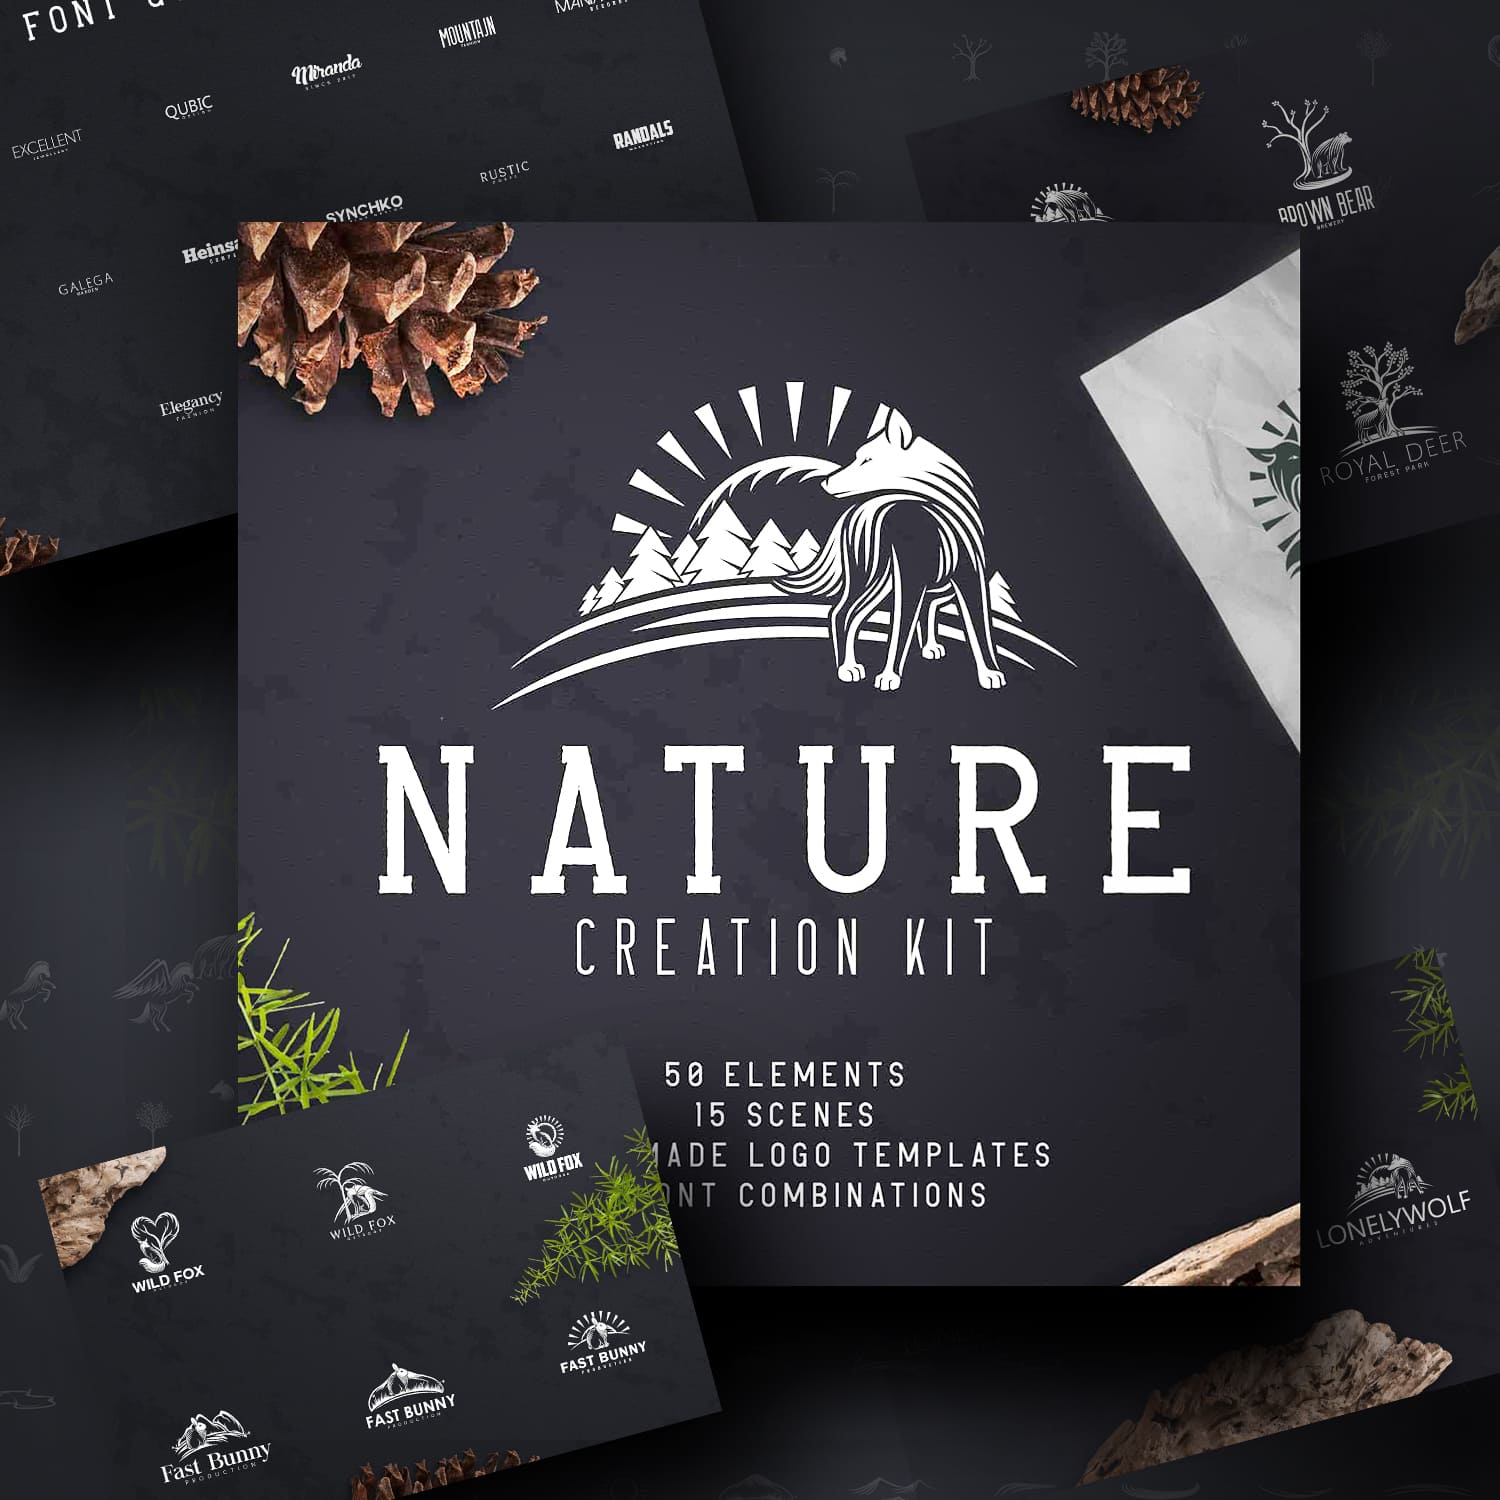 Nature Creation Kit: Logo, Elements.